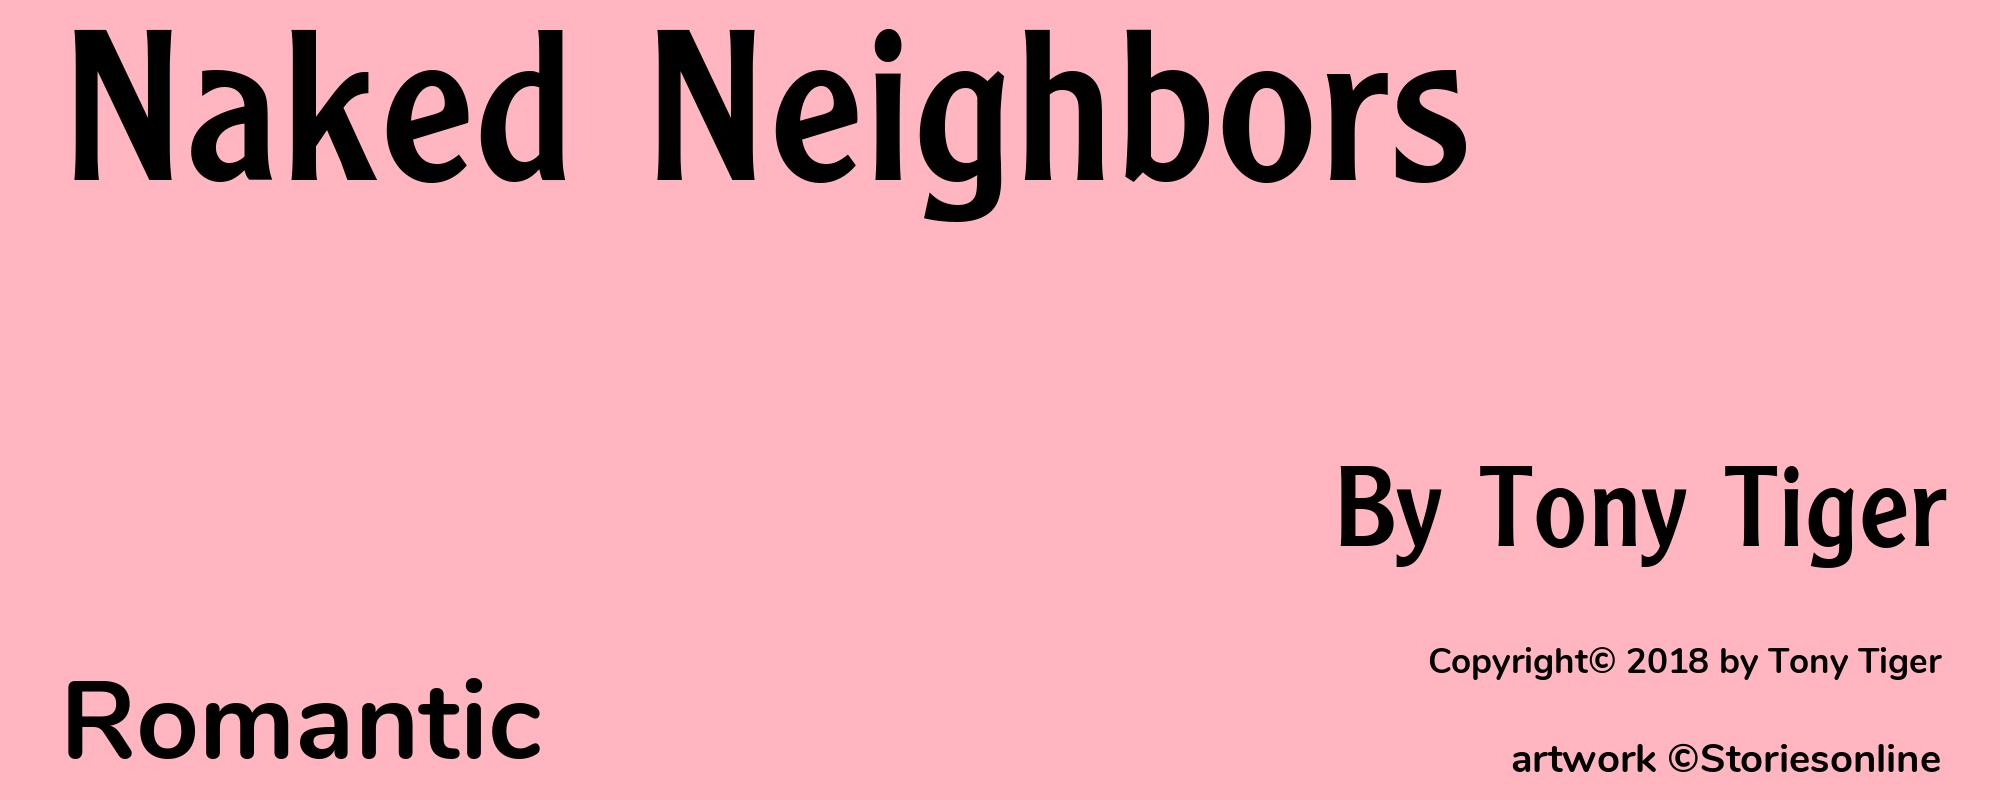 Naked Neighbors - Cover